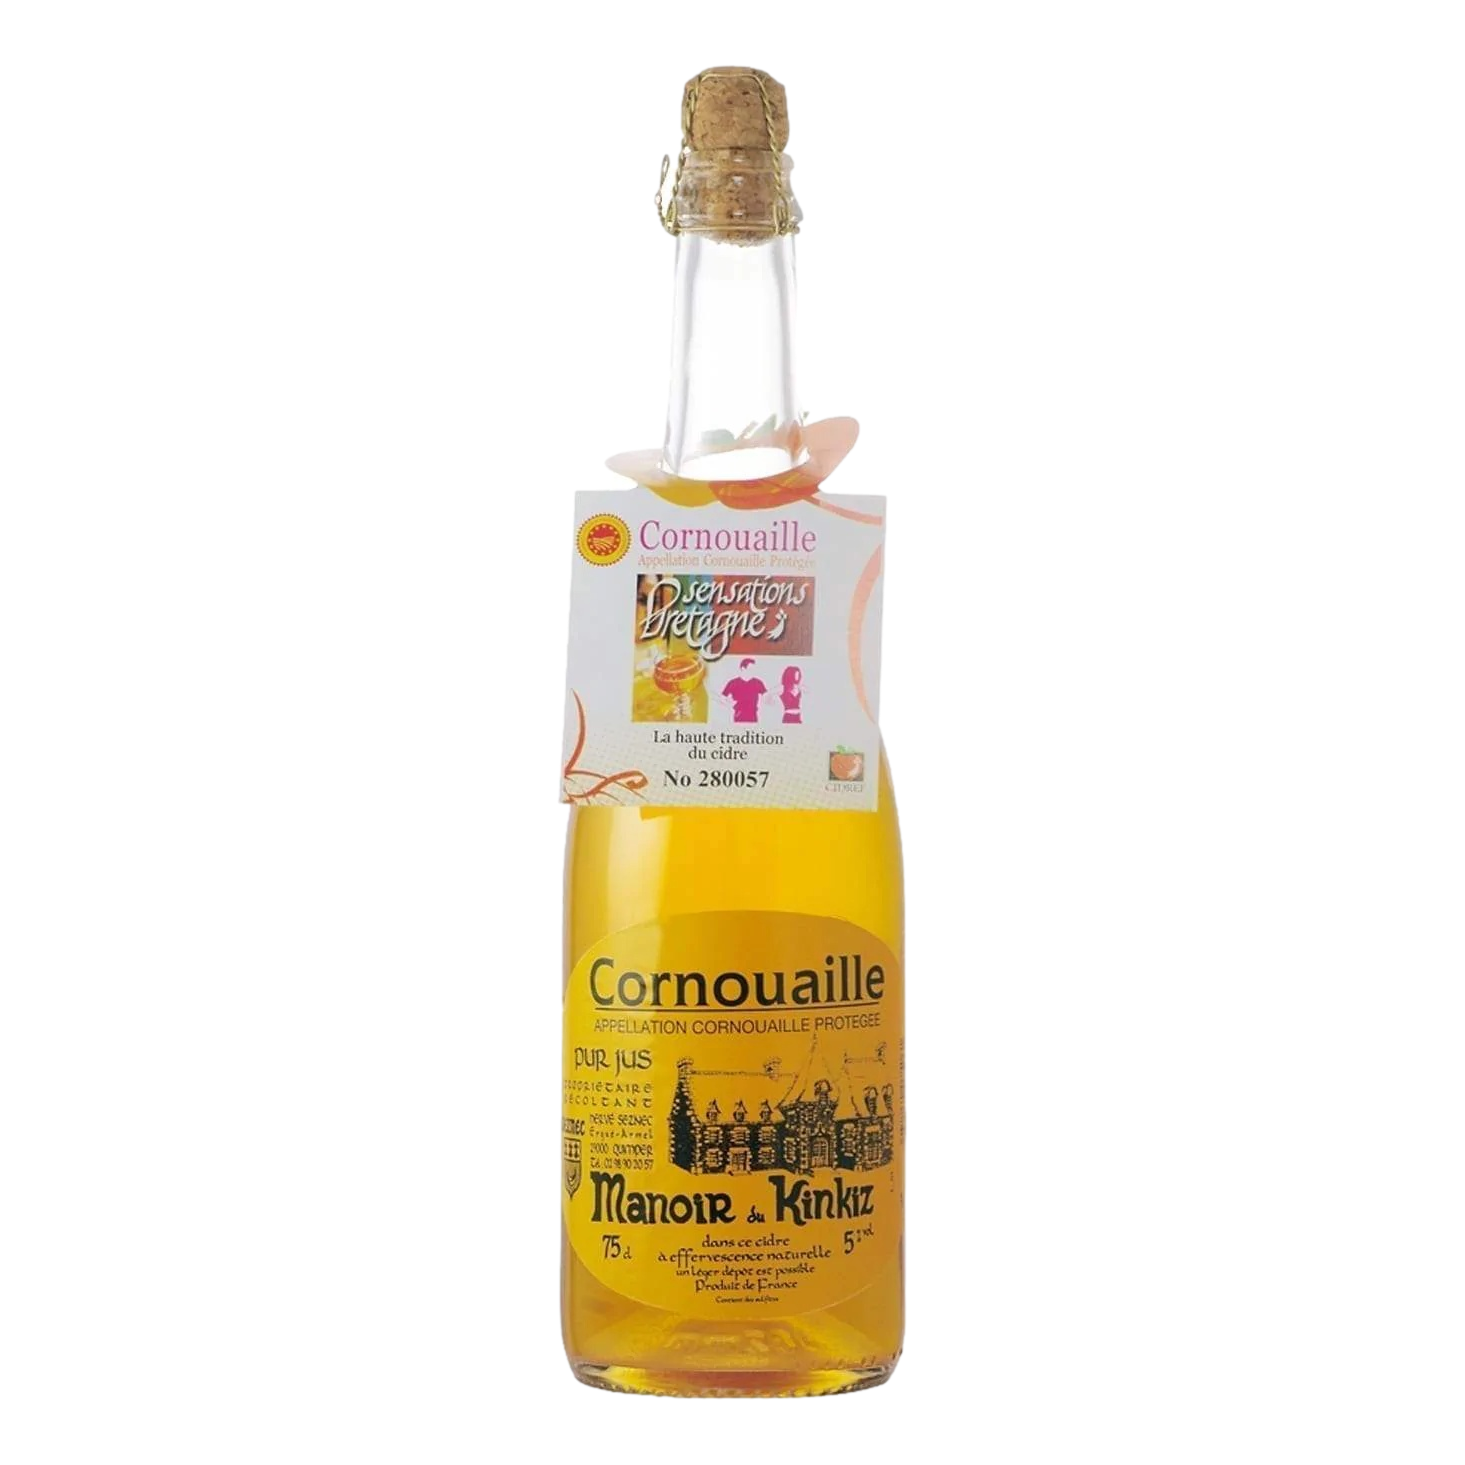 Manoir Kinkiz Cornouaille Cidre 750ml Bottle Single